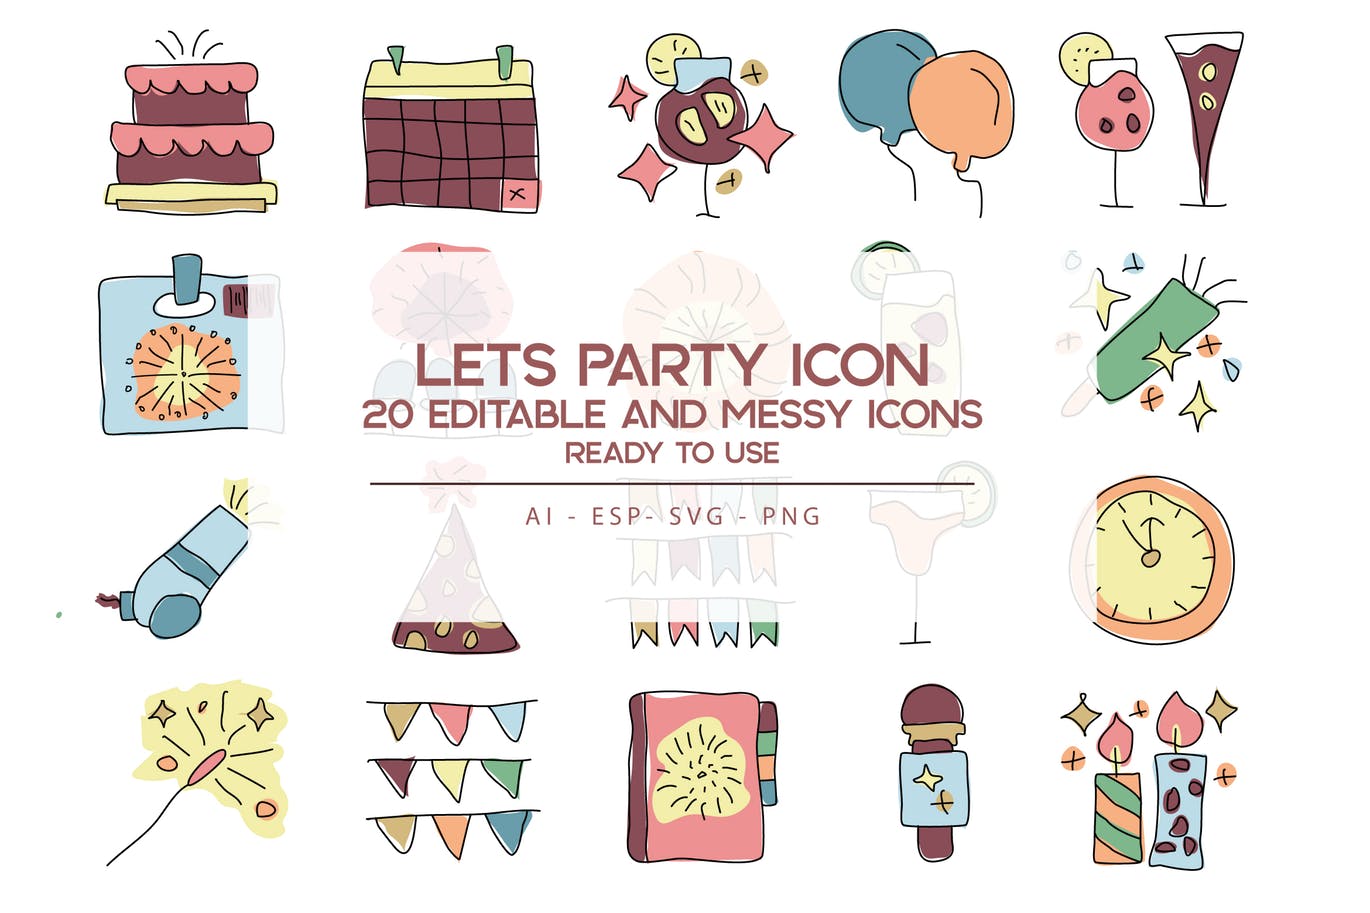 20枚活动派对主题手绘设计风格矢量素材库精选图标 Let’s Party Icons Set插图